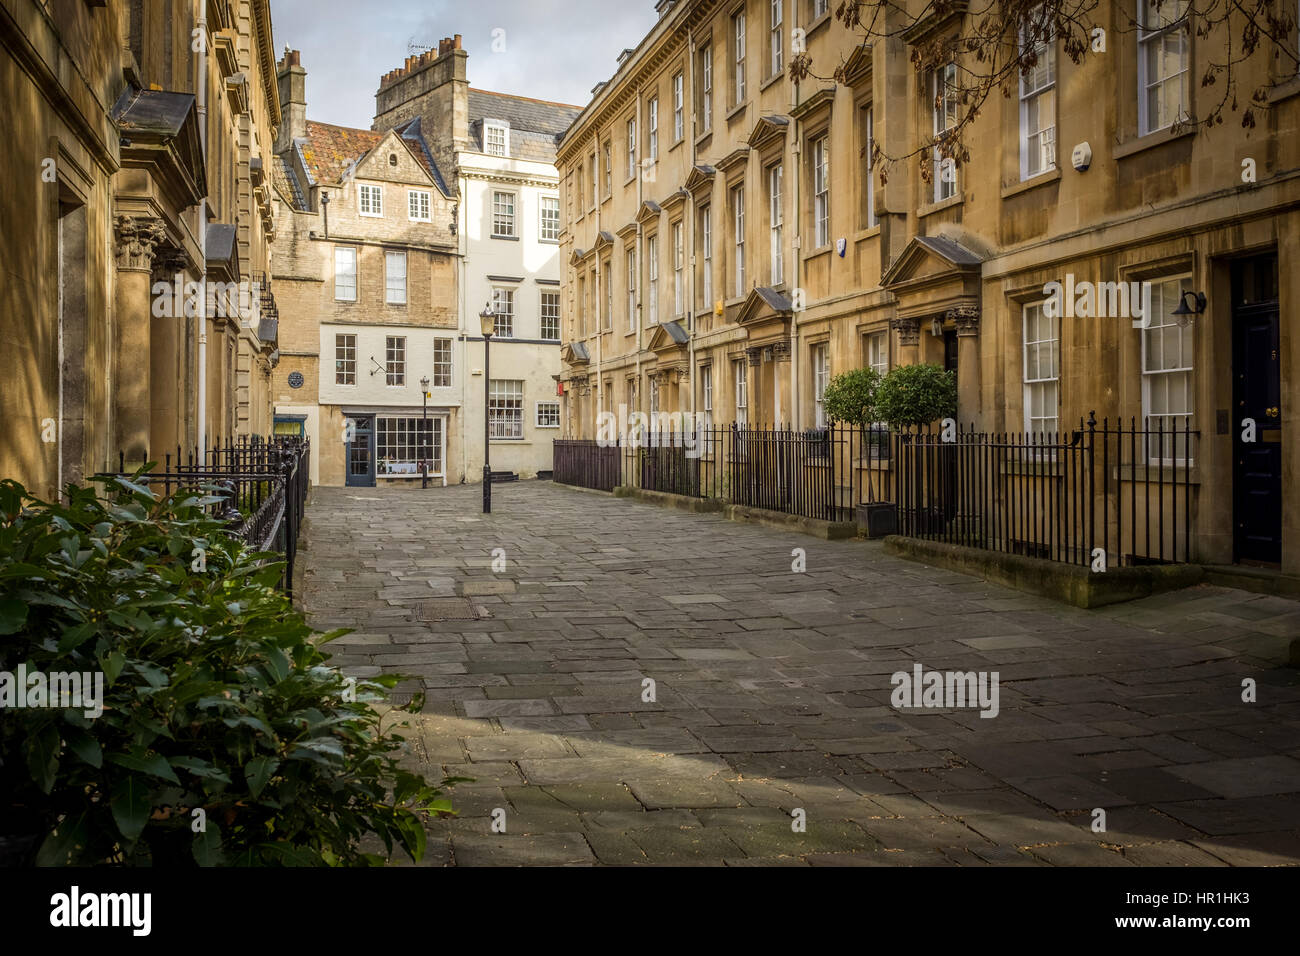 Quiet street scene, Bath, UK Stock Photo